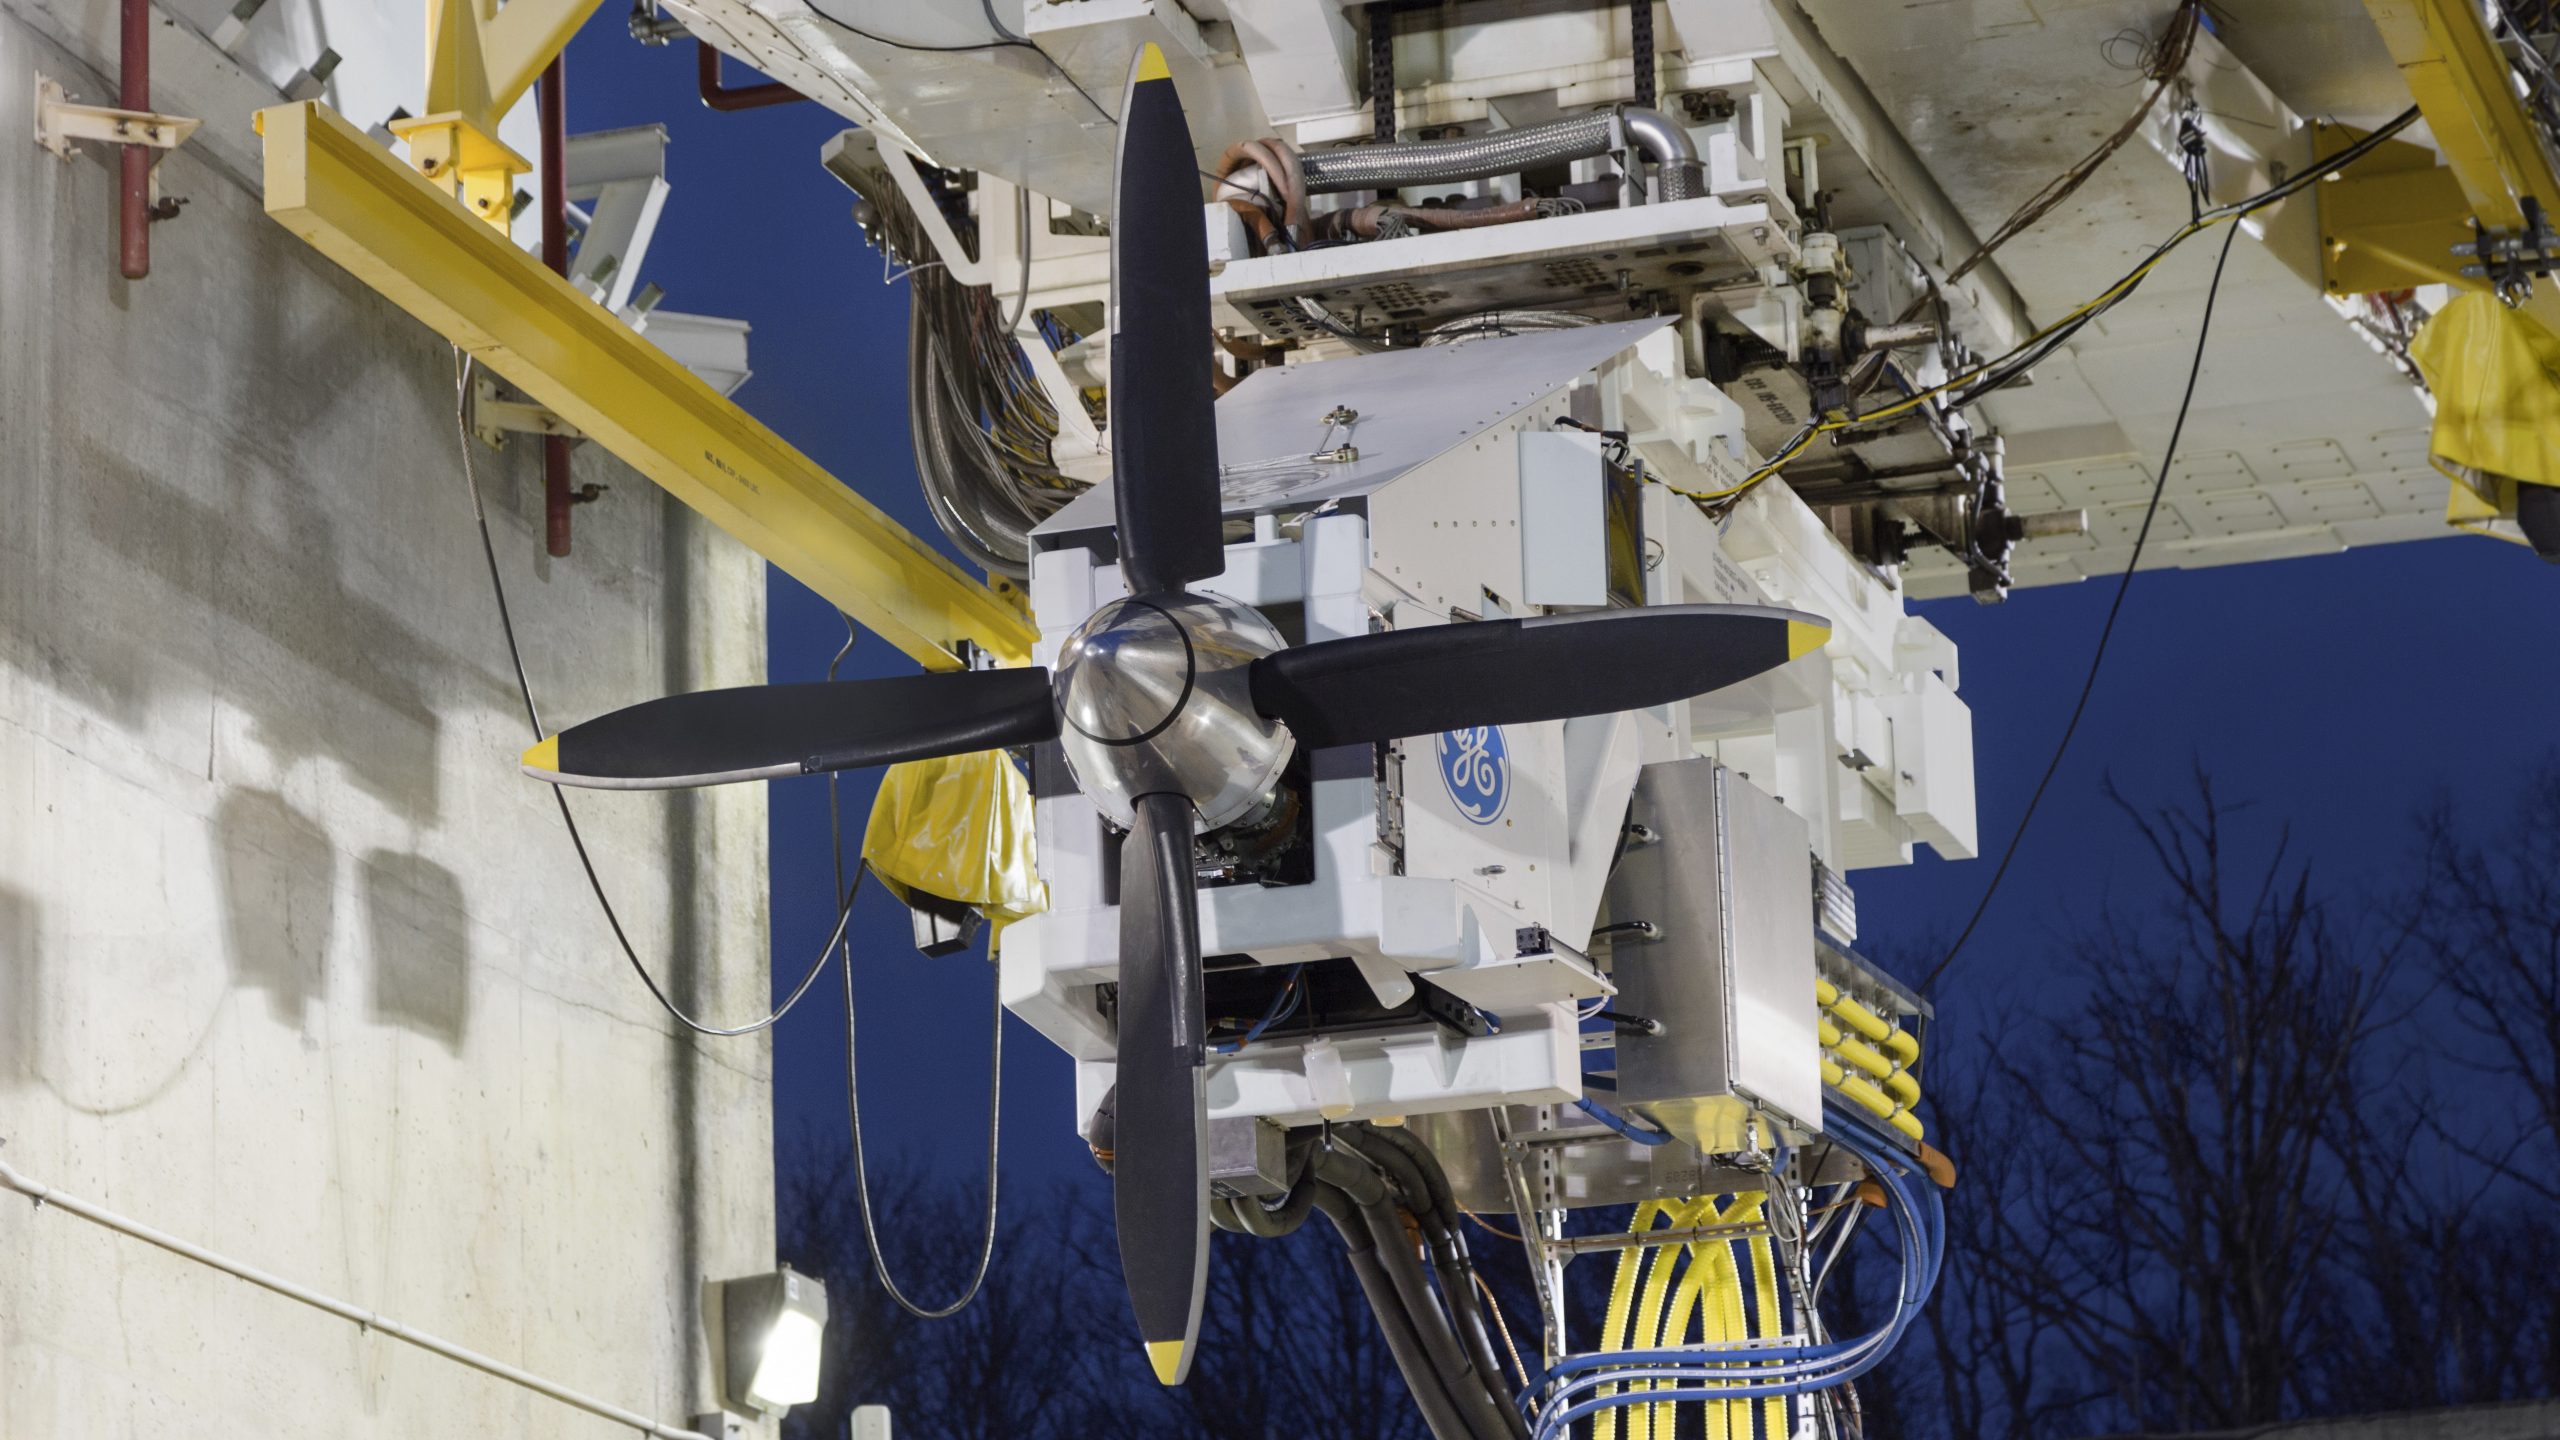 NASA hibrit elektrik teknolojisi test aracı için GE Havacılık’ı seçti